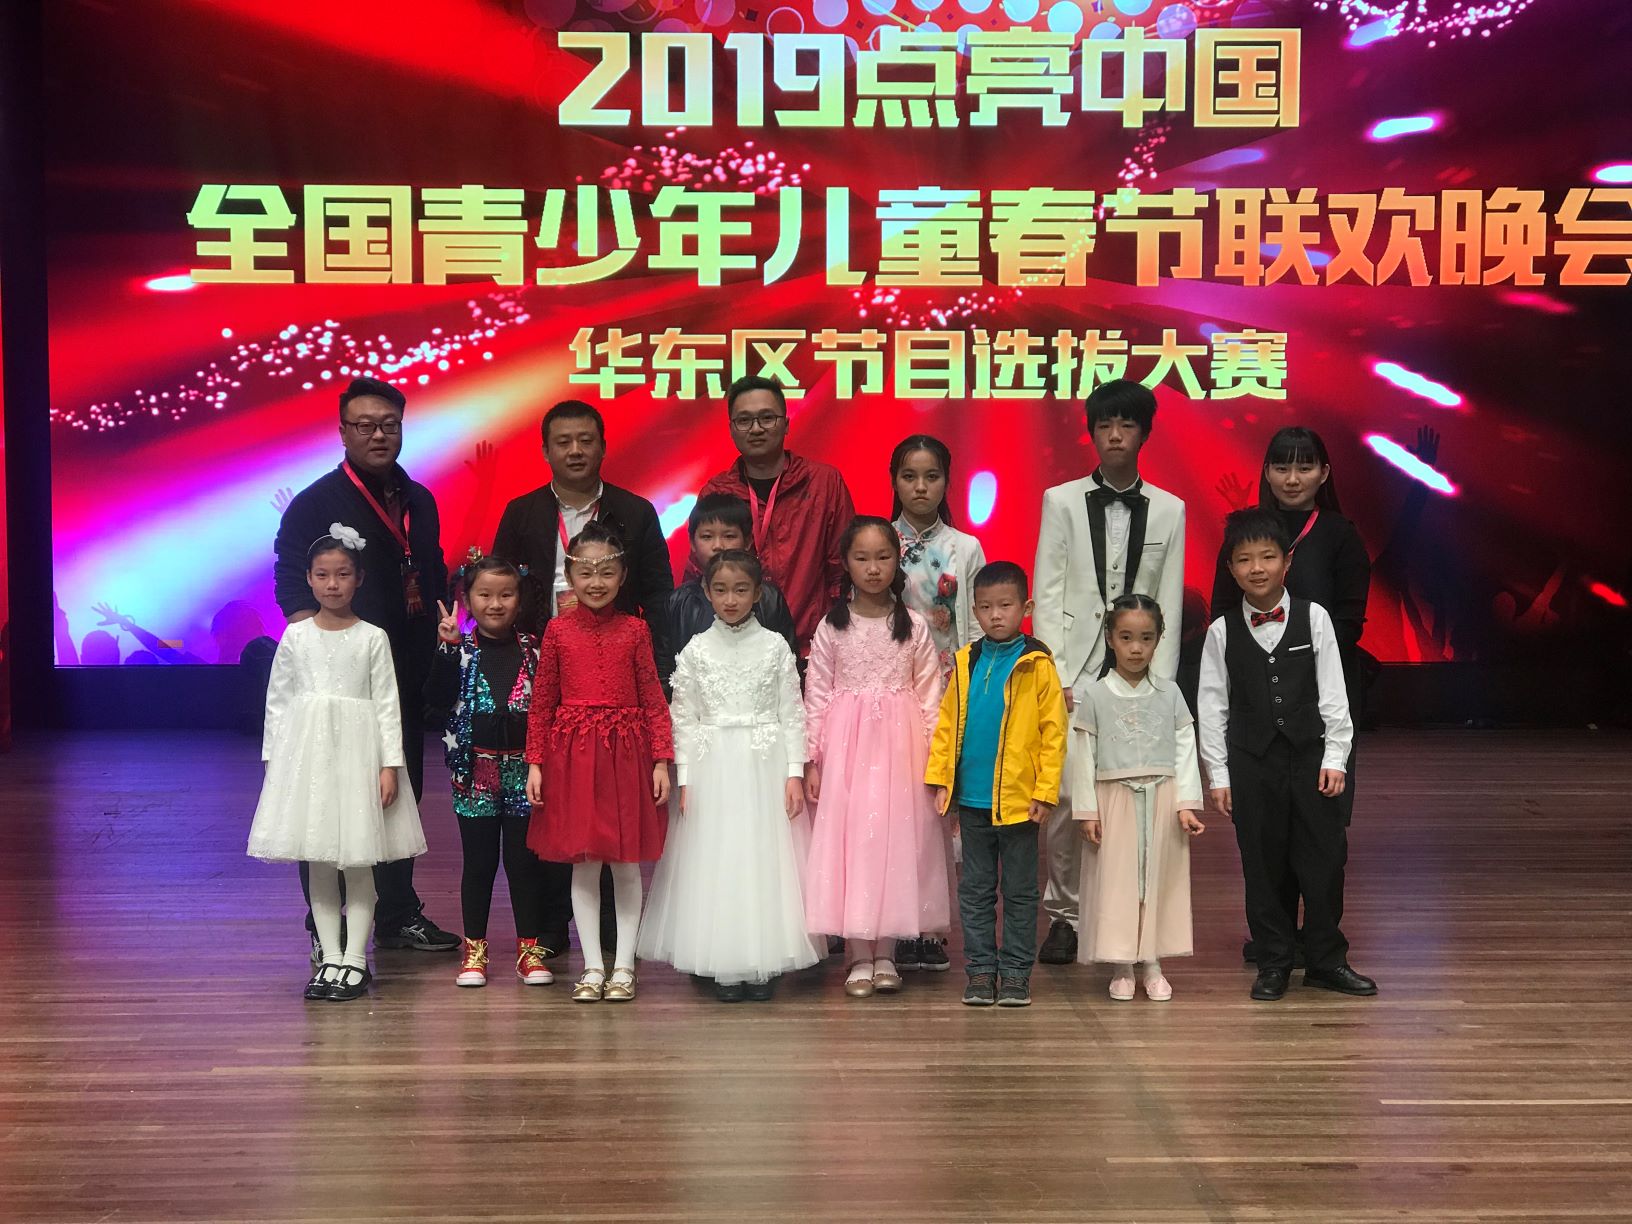 穆利尔钢琴助力“2019点亮中国”全国青少年儿童春节联欢晚会4